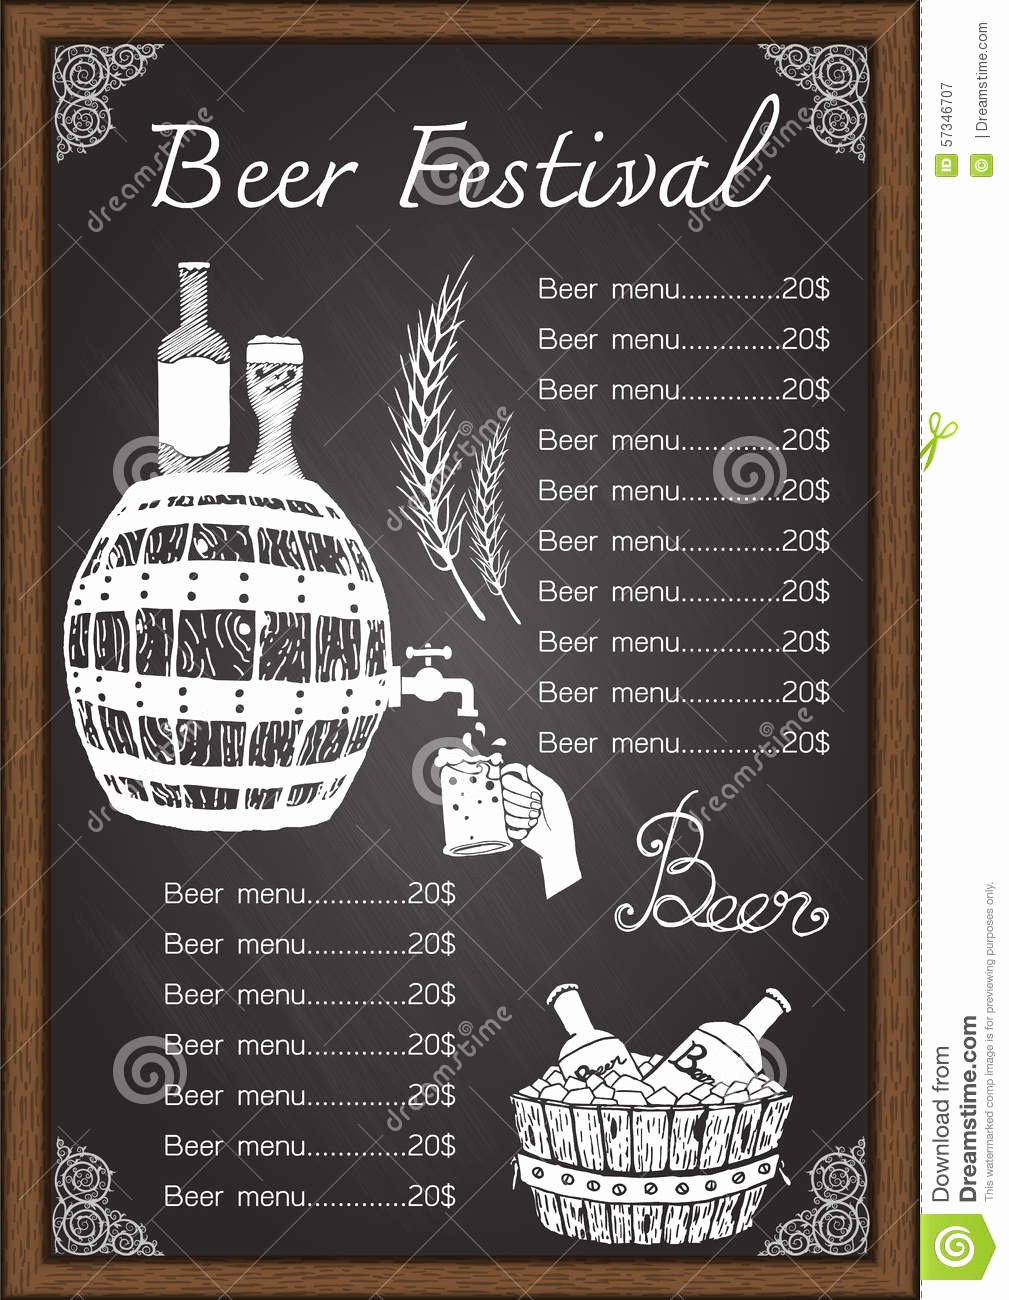 Free Beer Menu Template Luxury Beer Menu Drink Menu Chalkboard Template Stock Vector